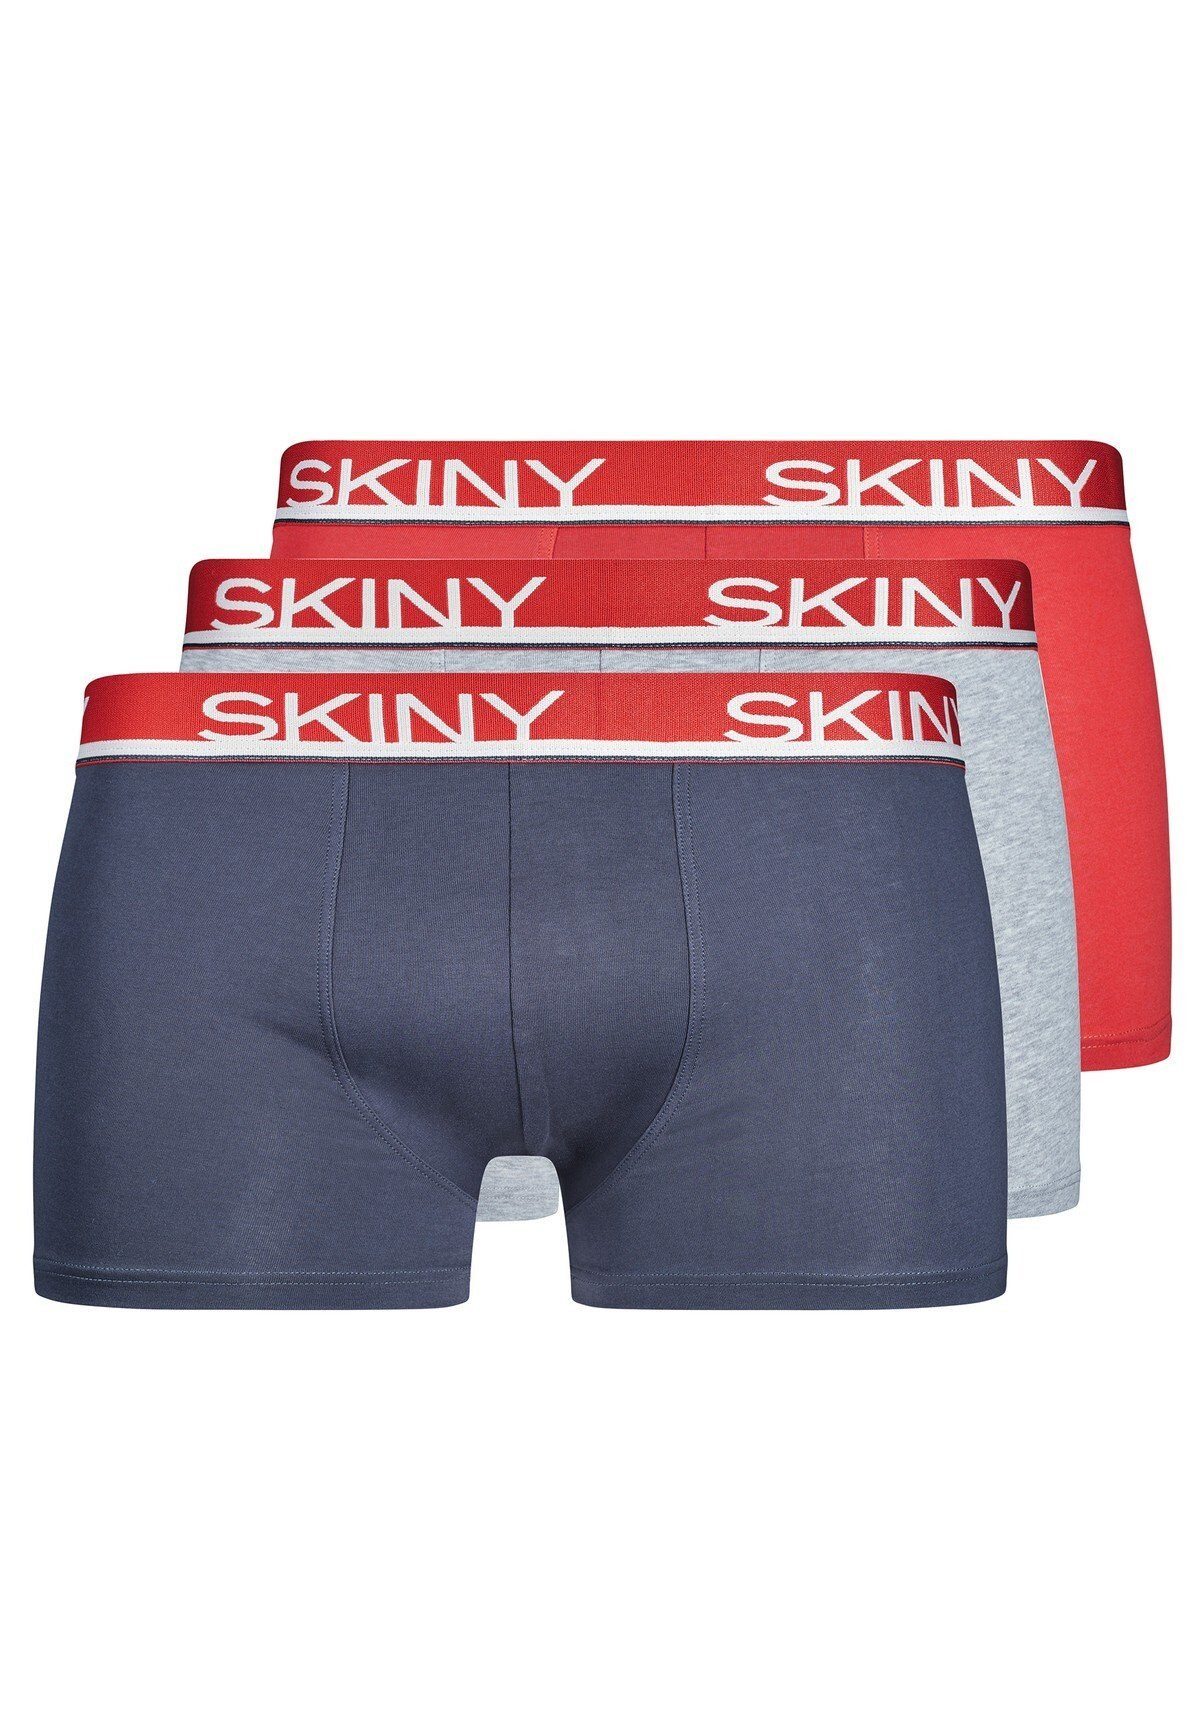 Shorts 3er Blau/Grau/Rot Pack Pants Herren Skiny Boxer Boxer Trunks, -